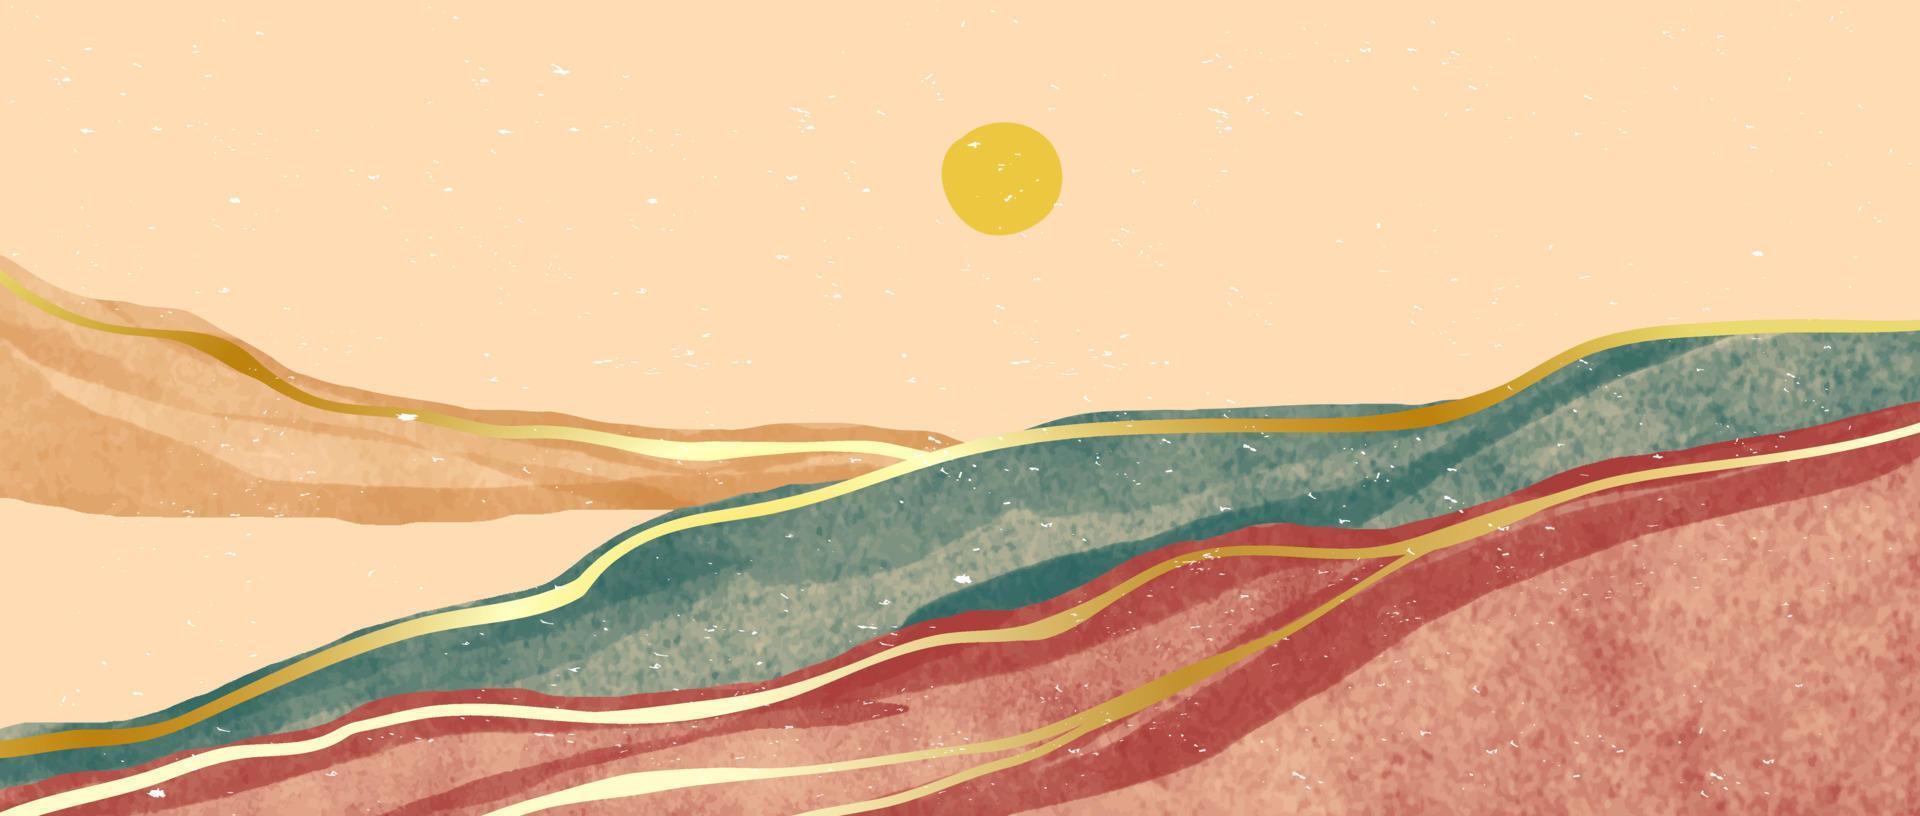 kreativ minimalistisk hand målad illustrationer av mitten århundrade modern. abstrakt samtida estetisk bakgrunder landskap med fjäll, kulle, solnedgång, hav. vektor illustrationer